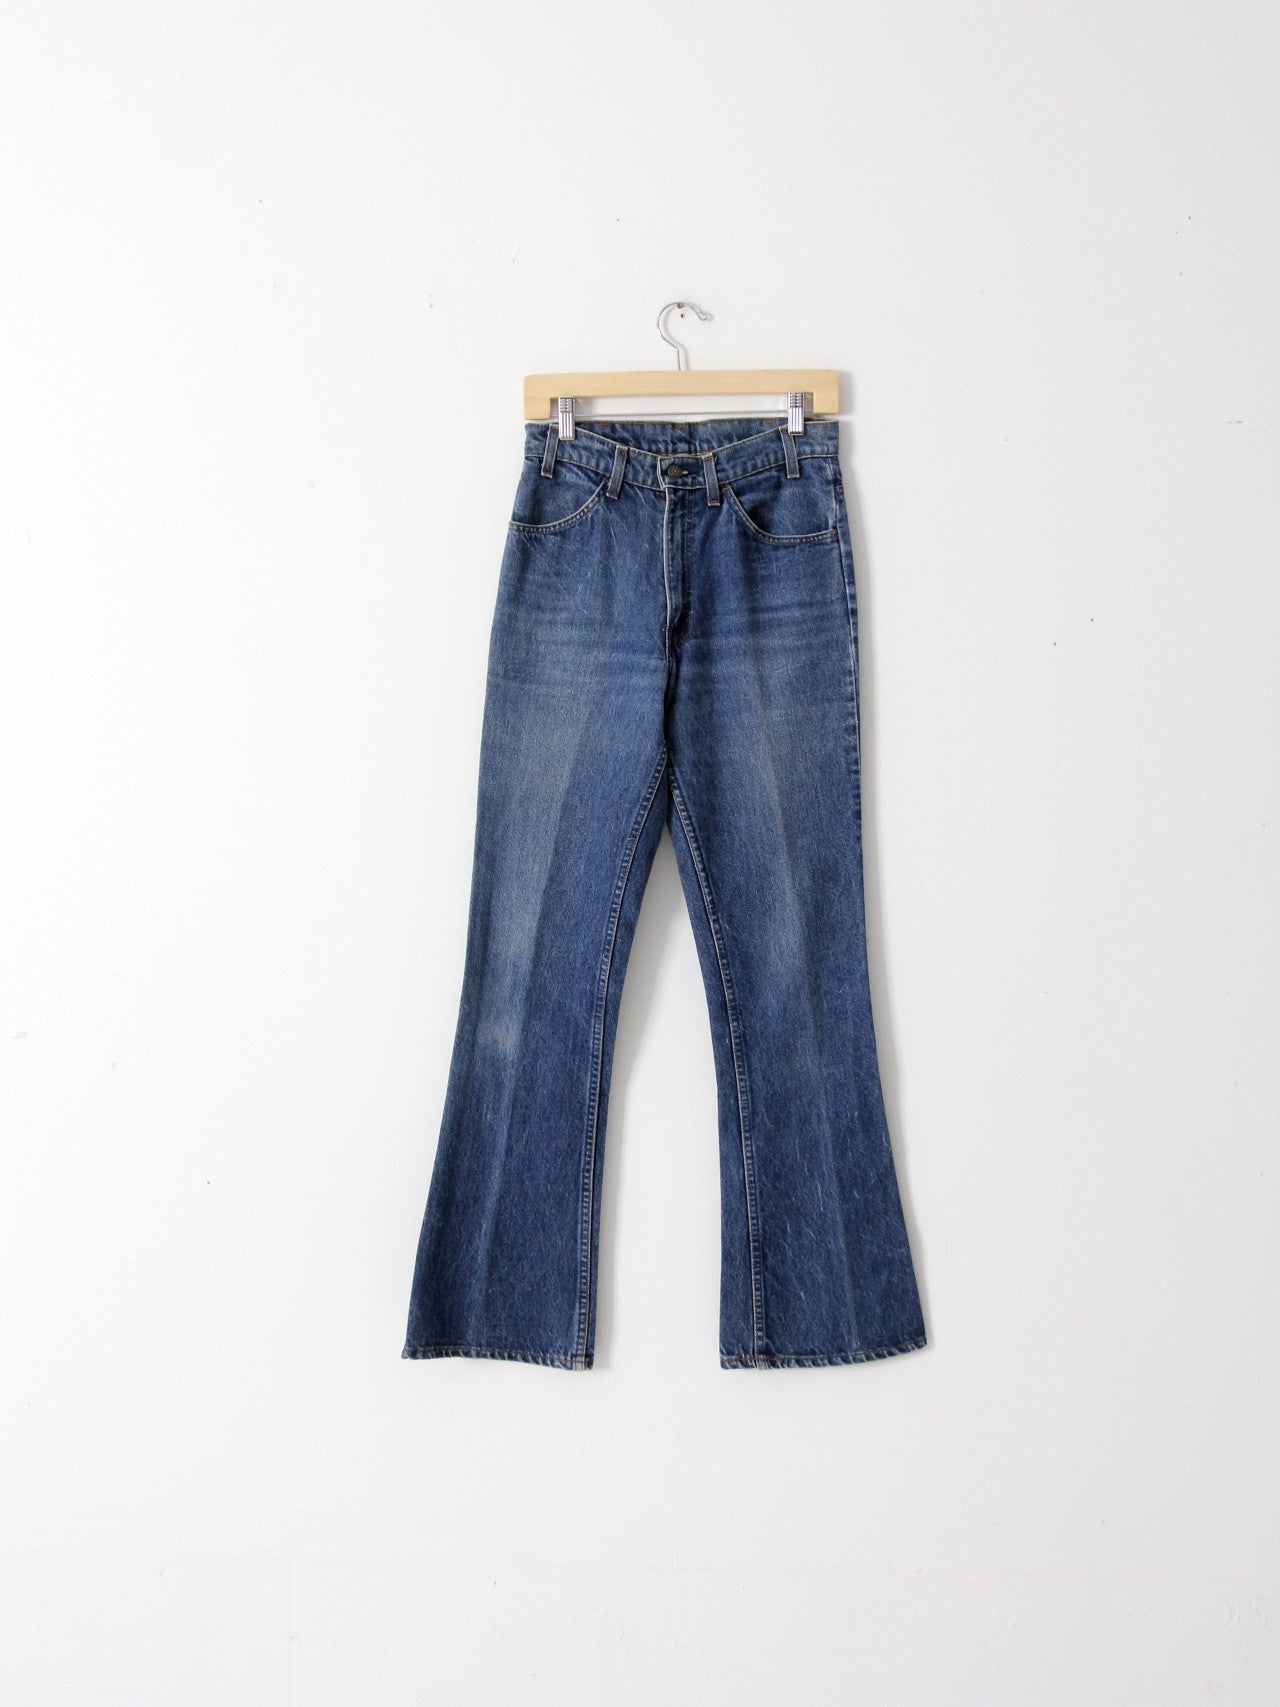 vintage 70s Levis 646 denim jeans, 29 x 30 – 86 Vintage